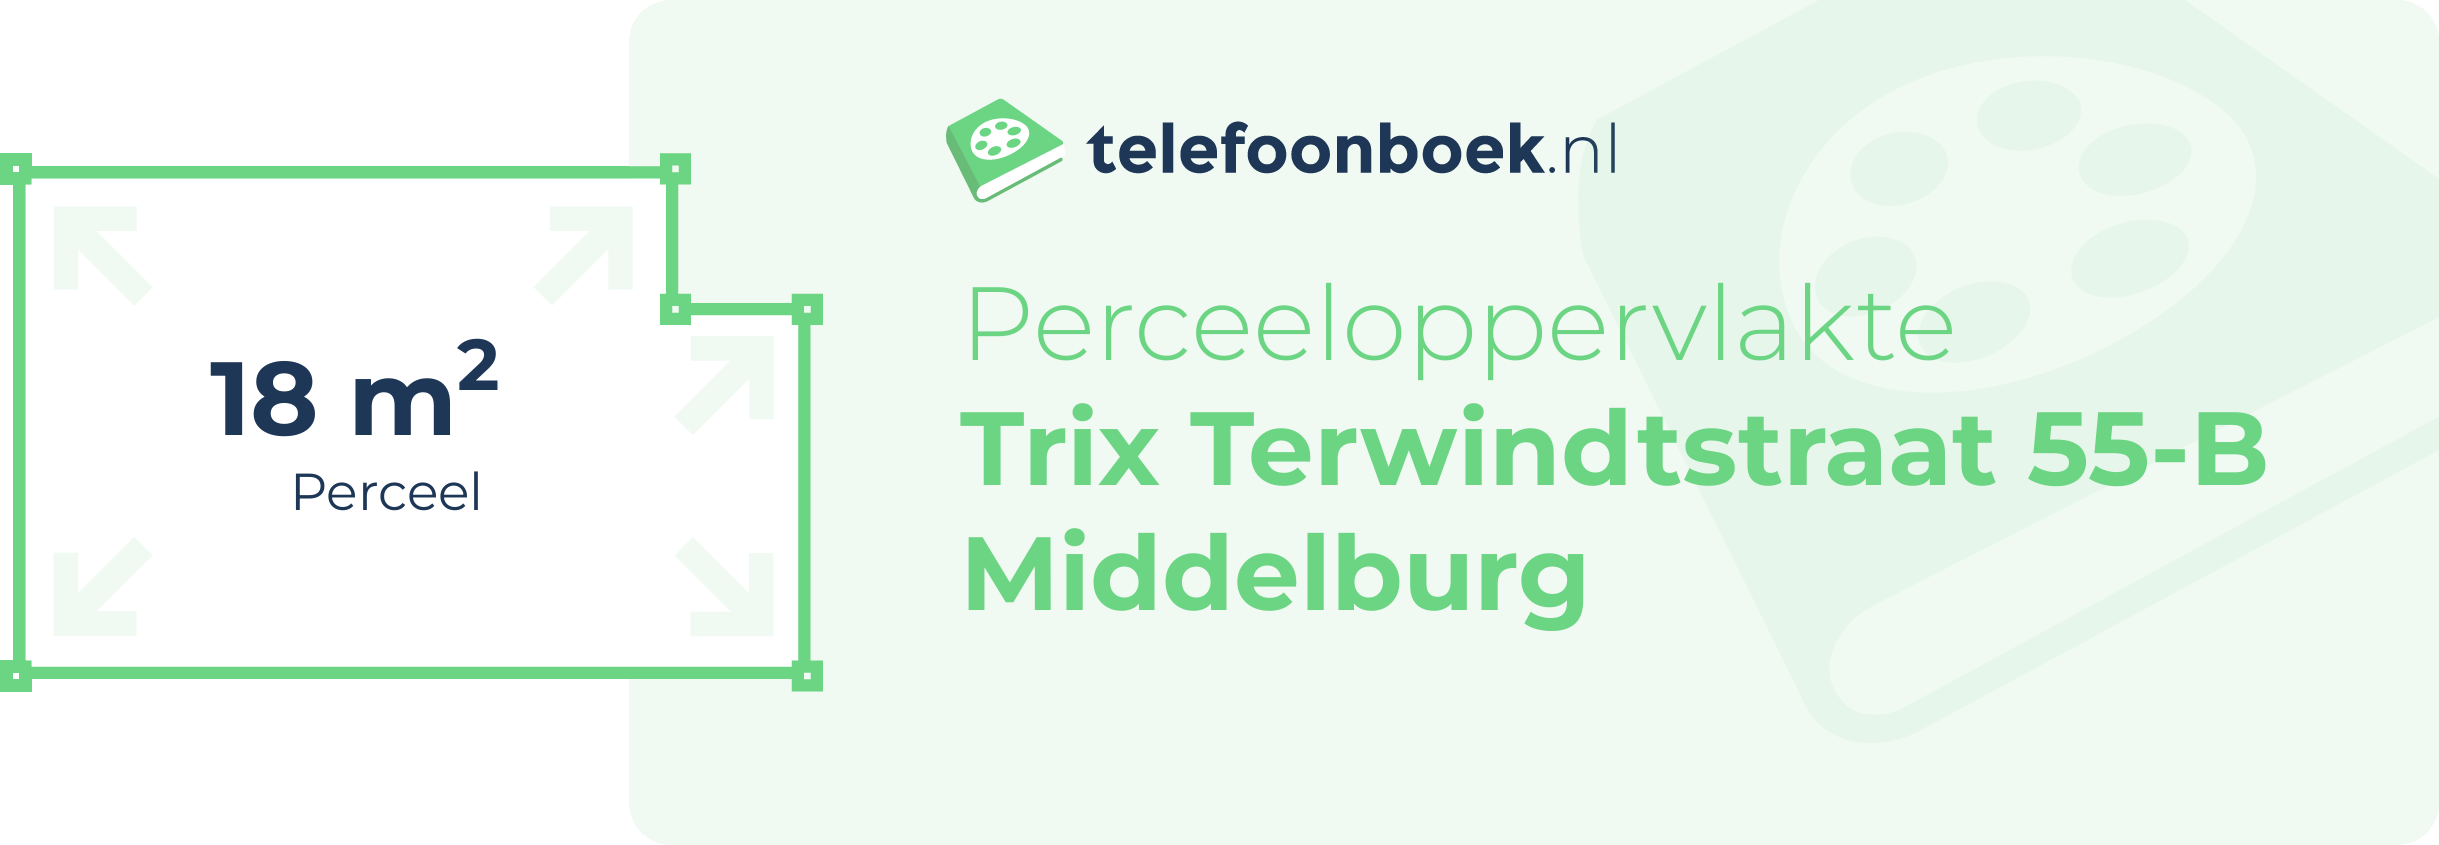 Perceeloppervlakte Trix Terwindtstraat 55-B Middelburg